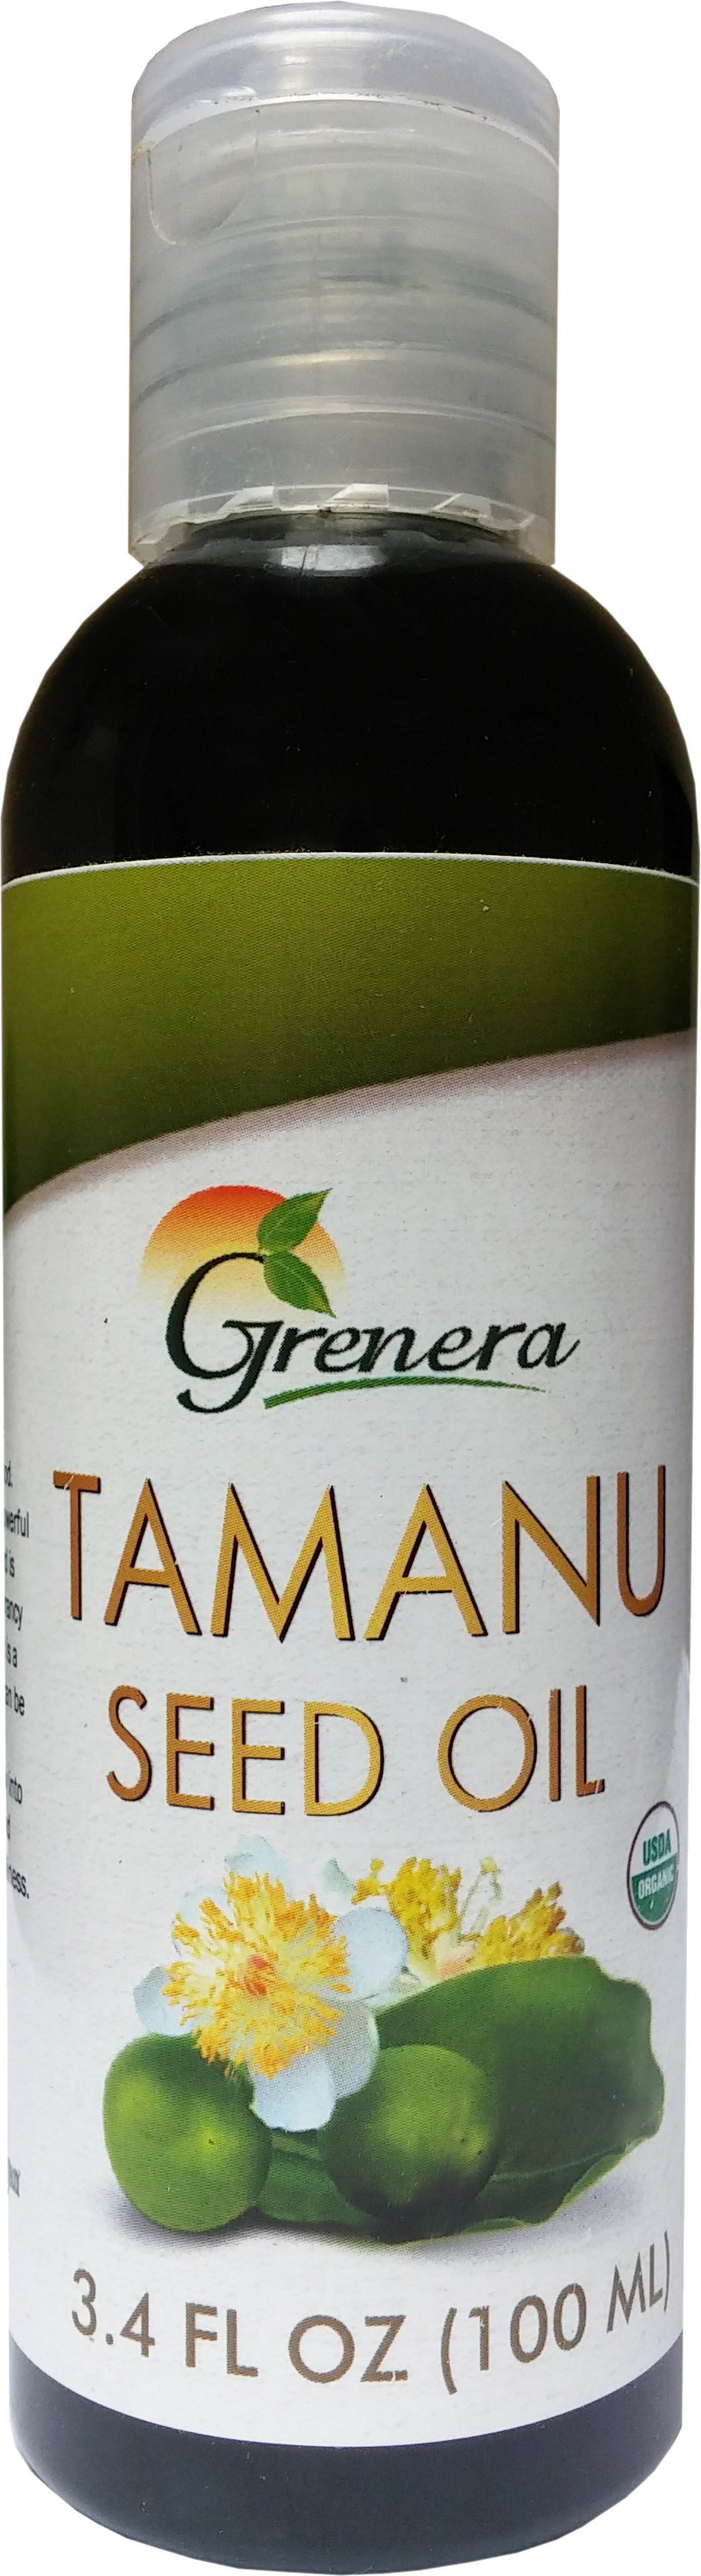 Grenera Tamanu Seed Oil